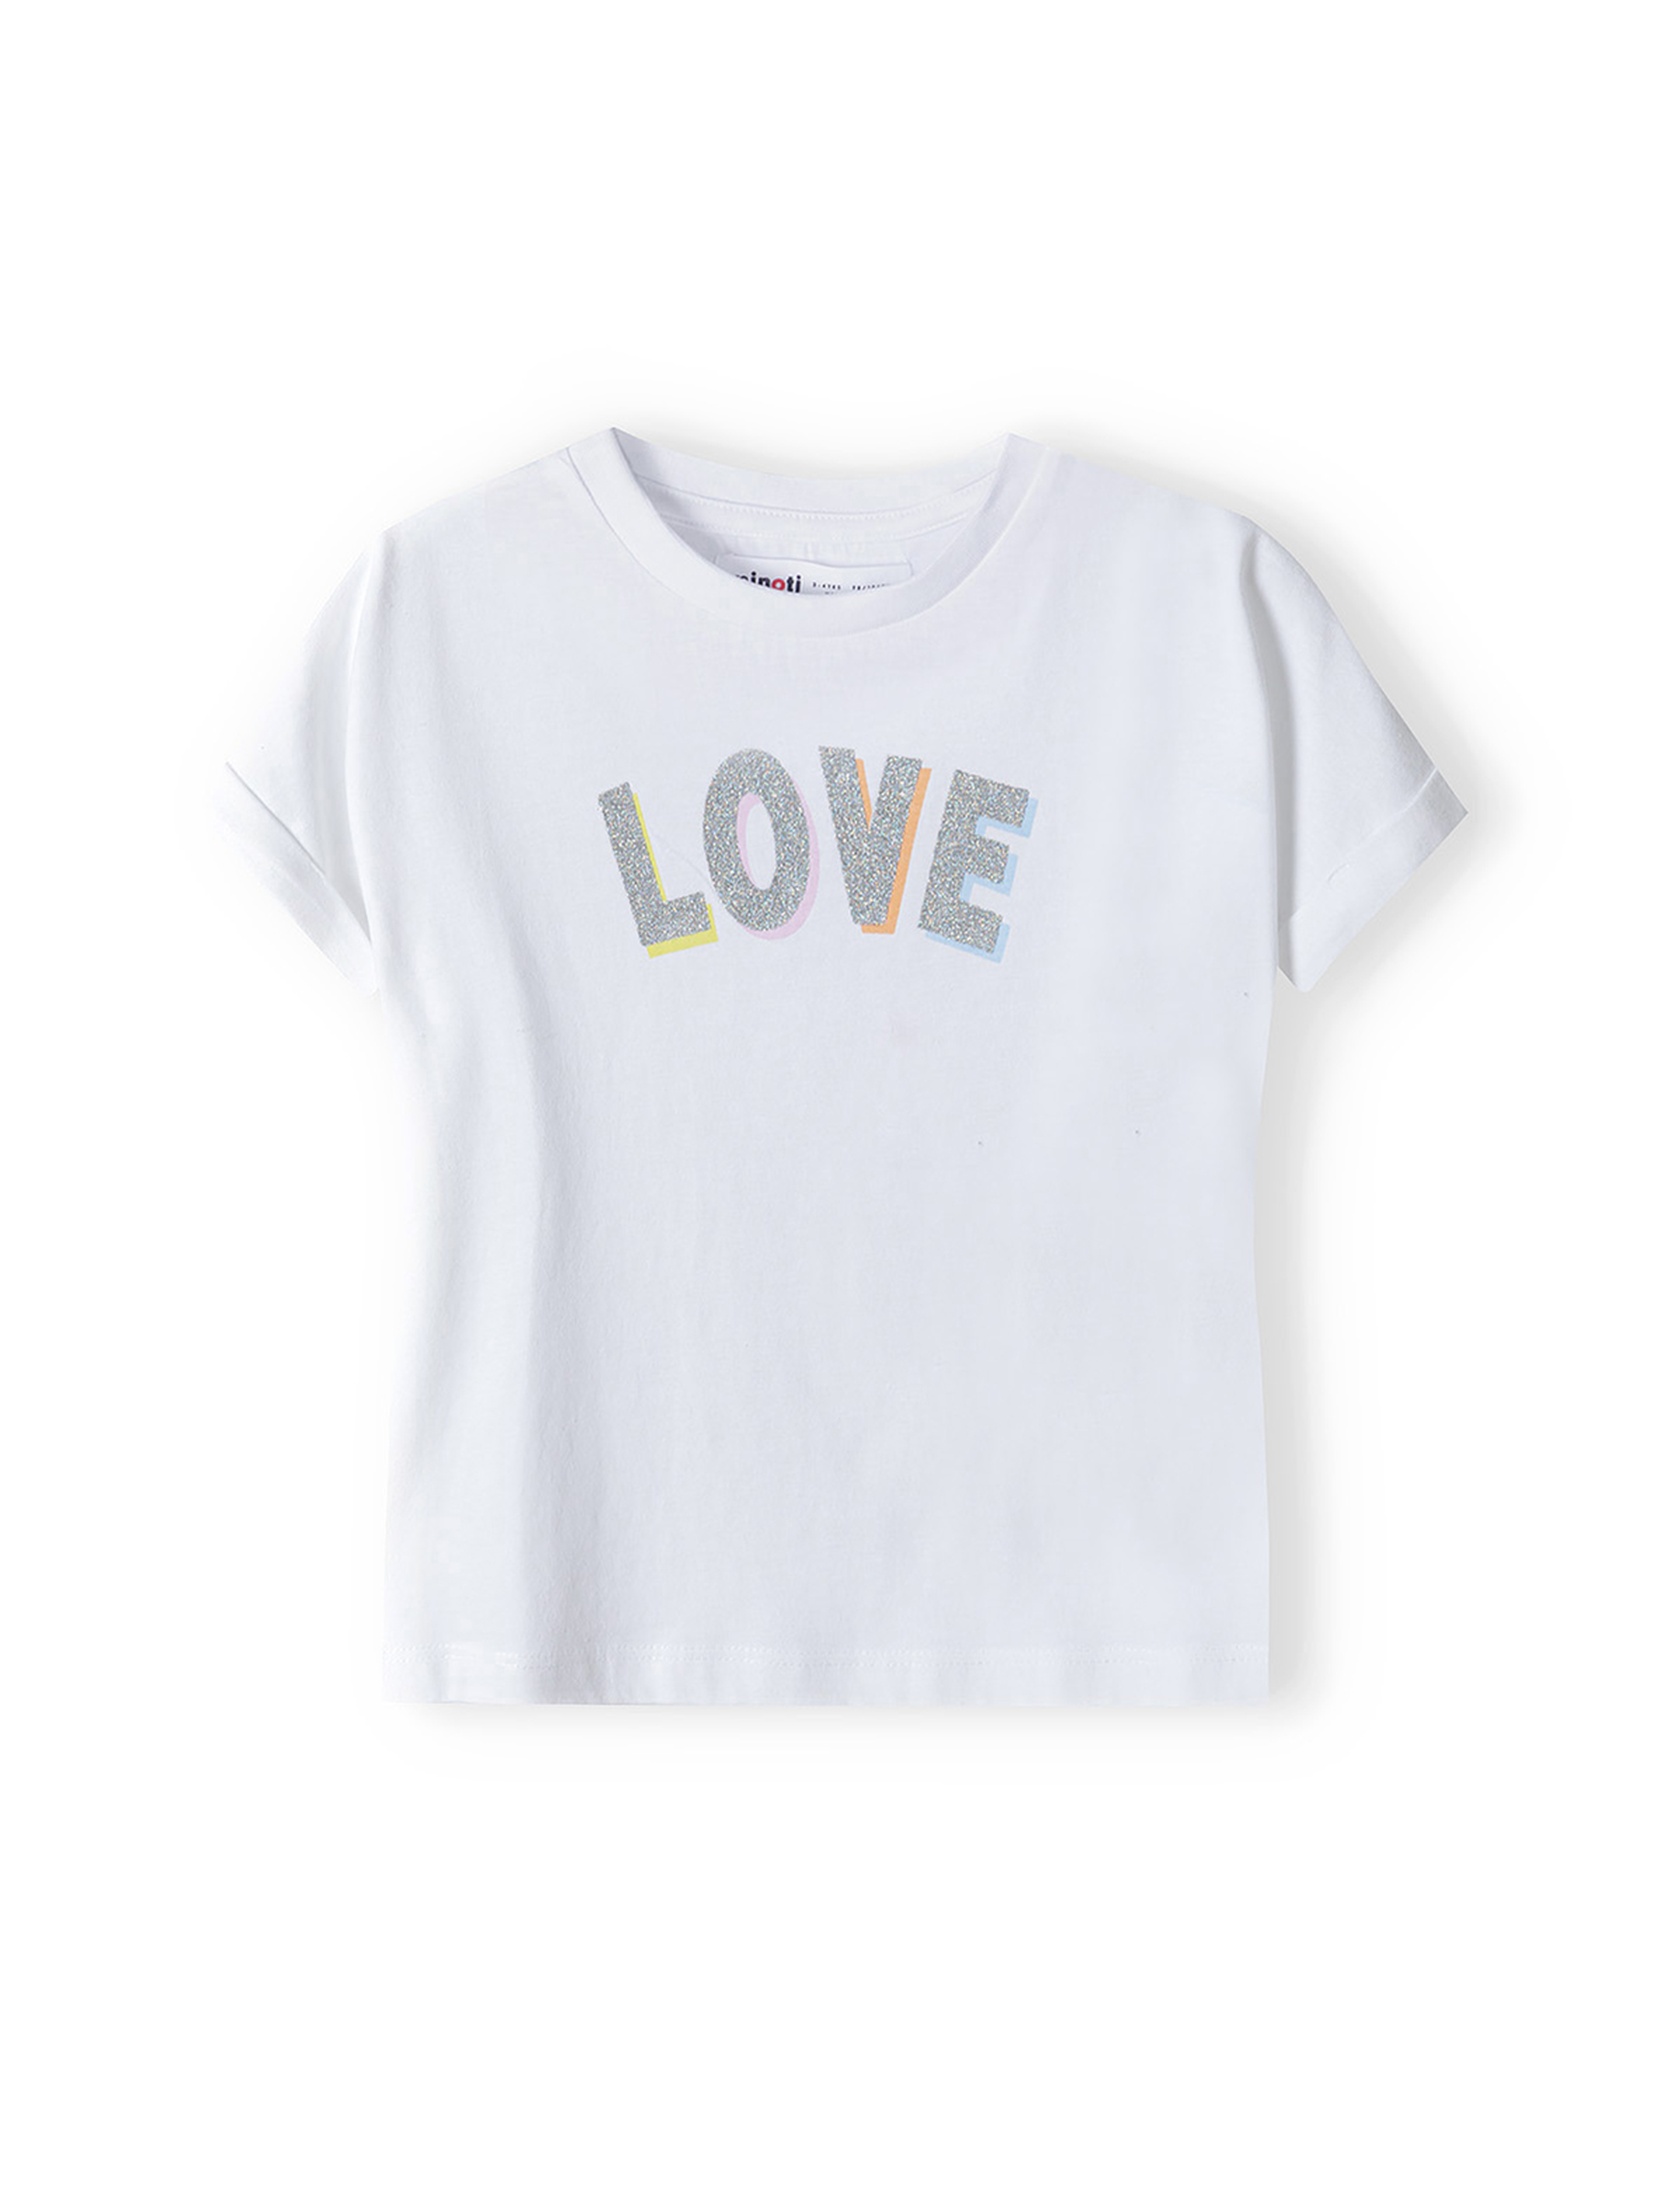 Biała bluzka dla dziewczynki z bawełny- Love